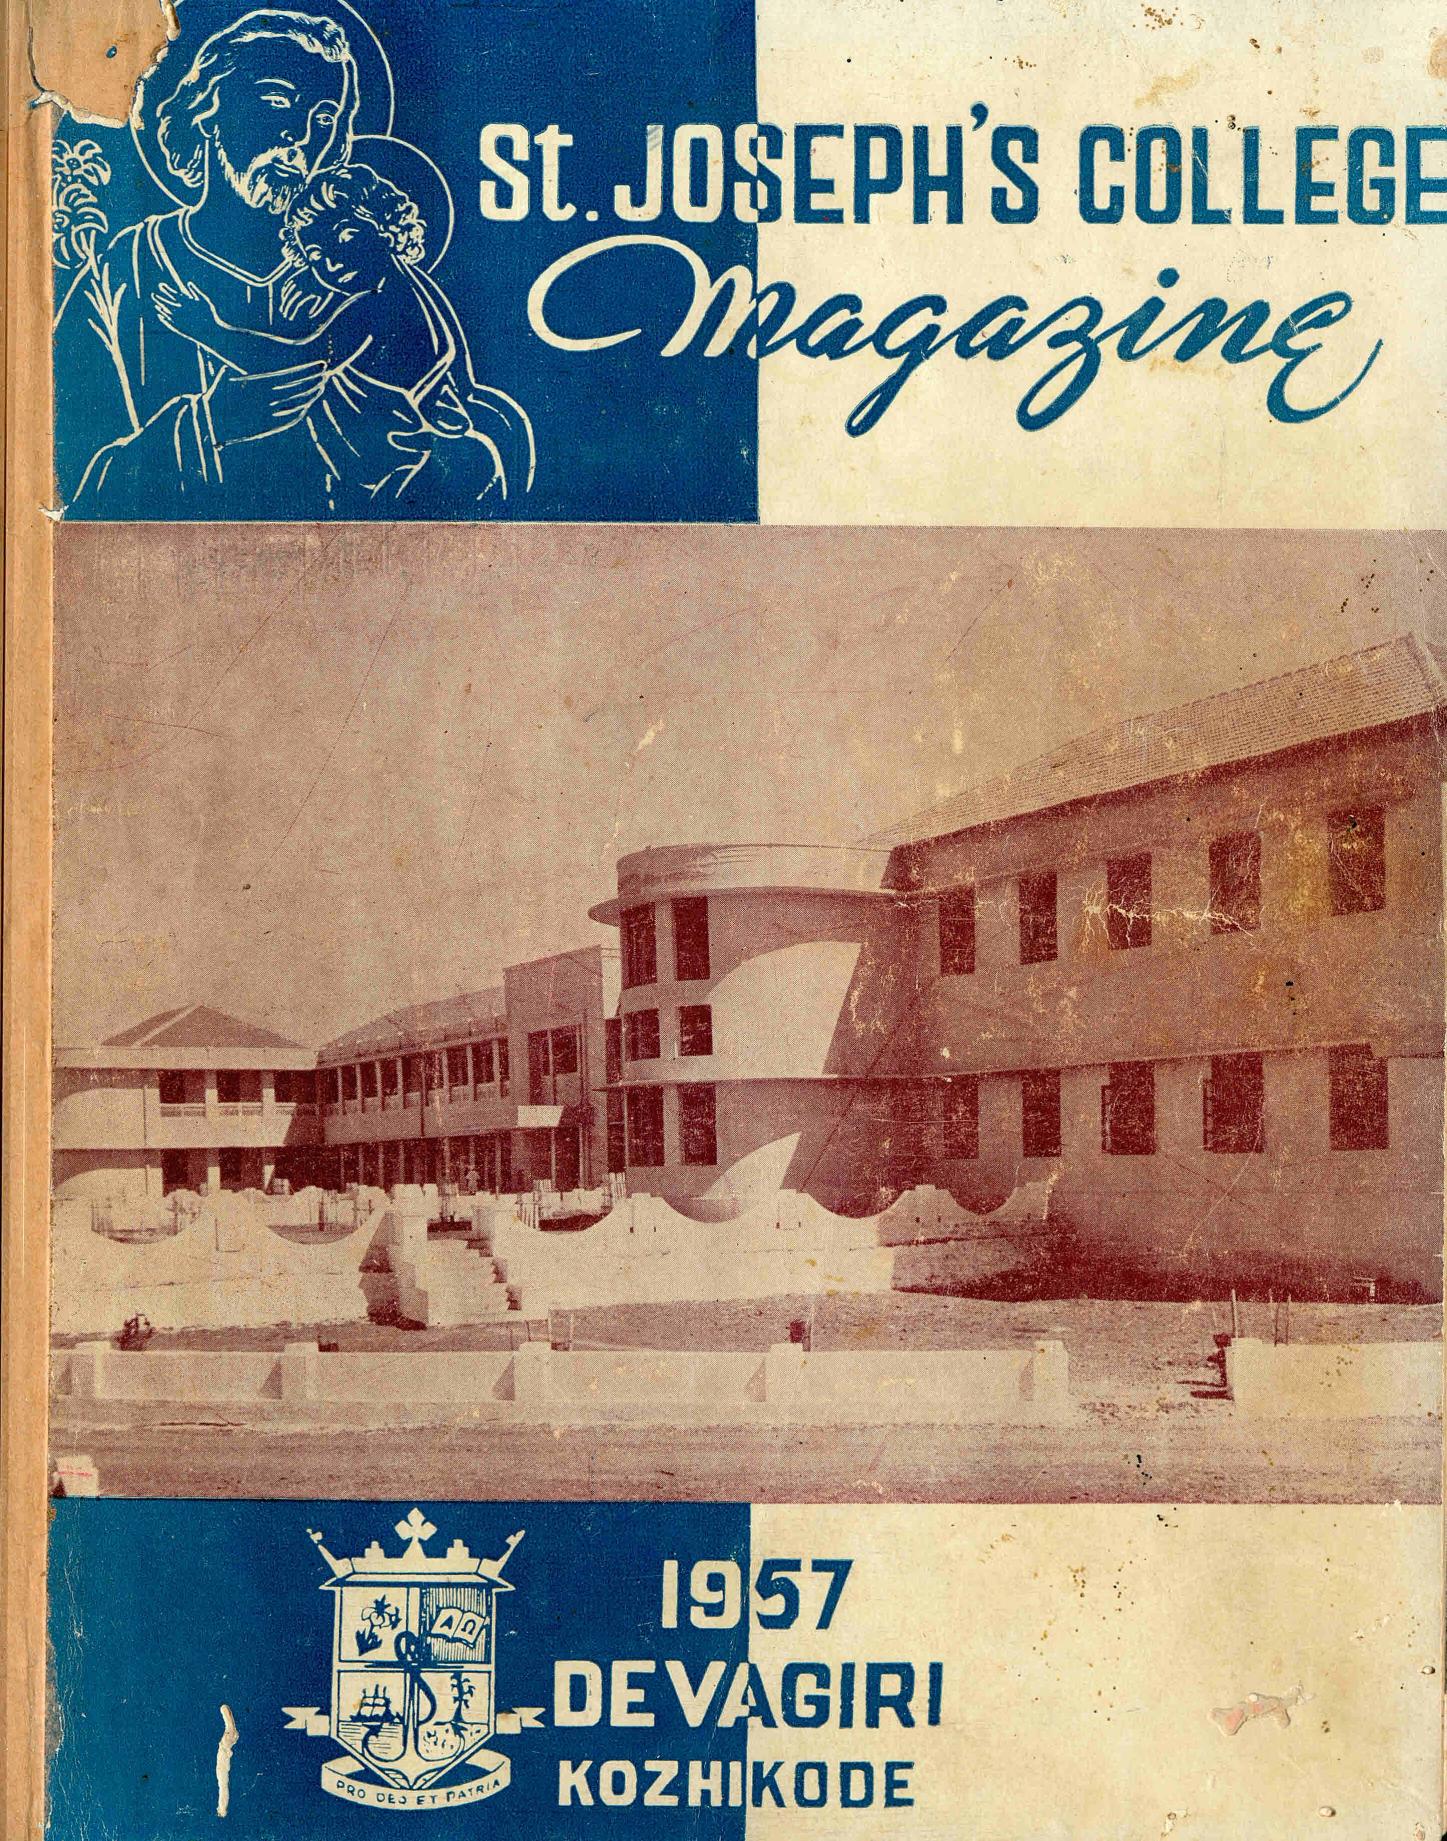 1957 - St. Josephs College Magazine - Devagiri